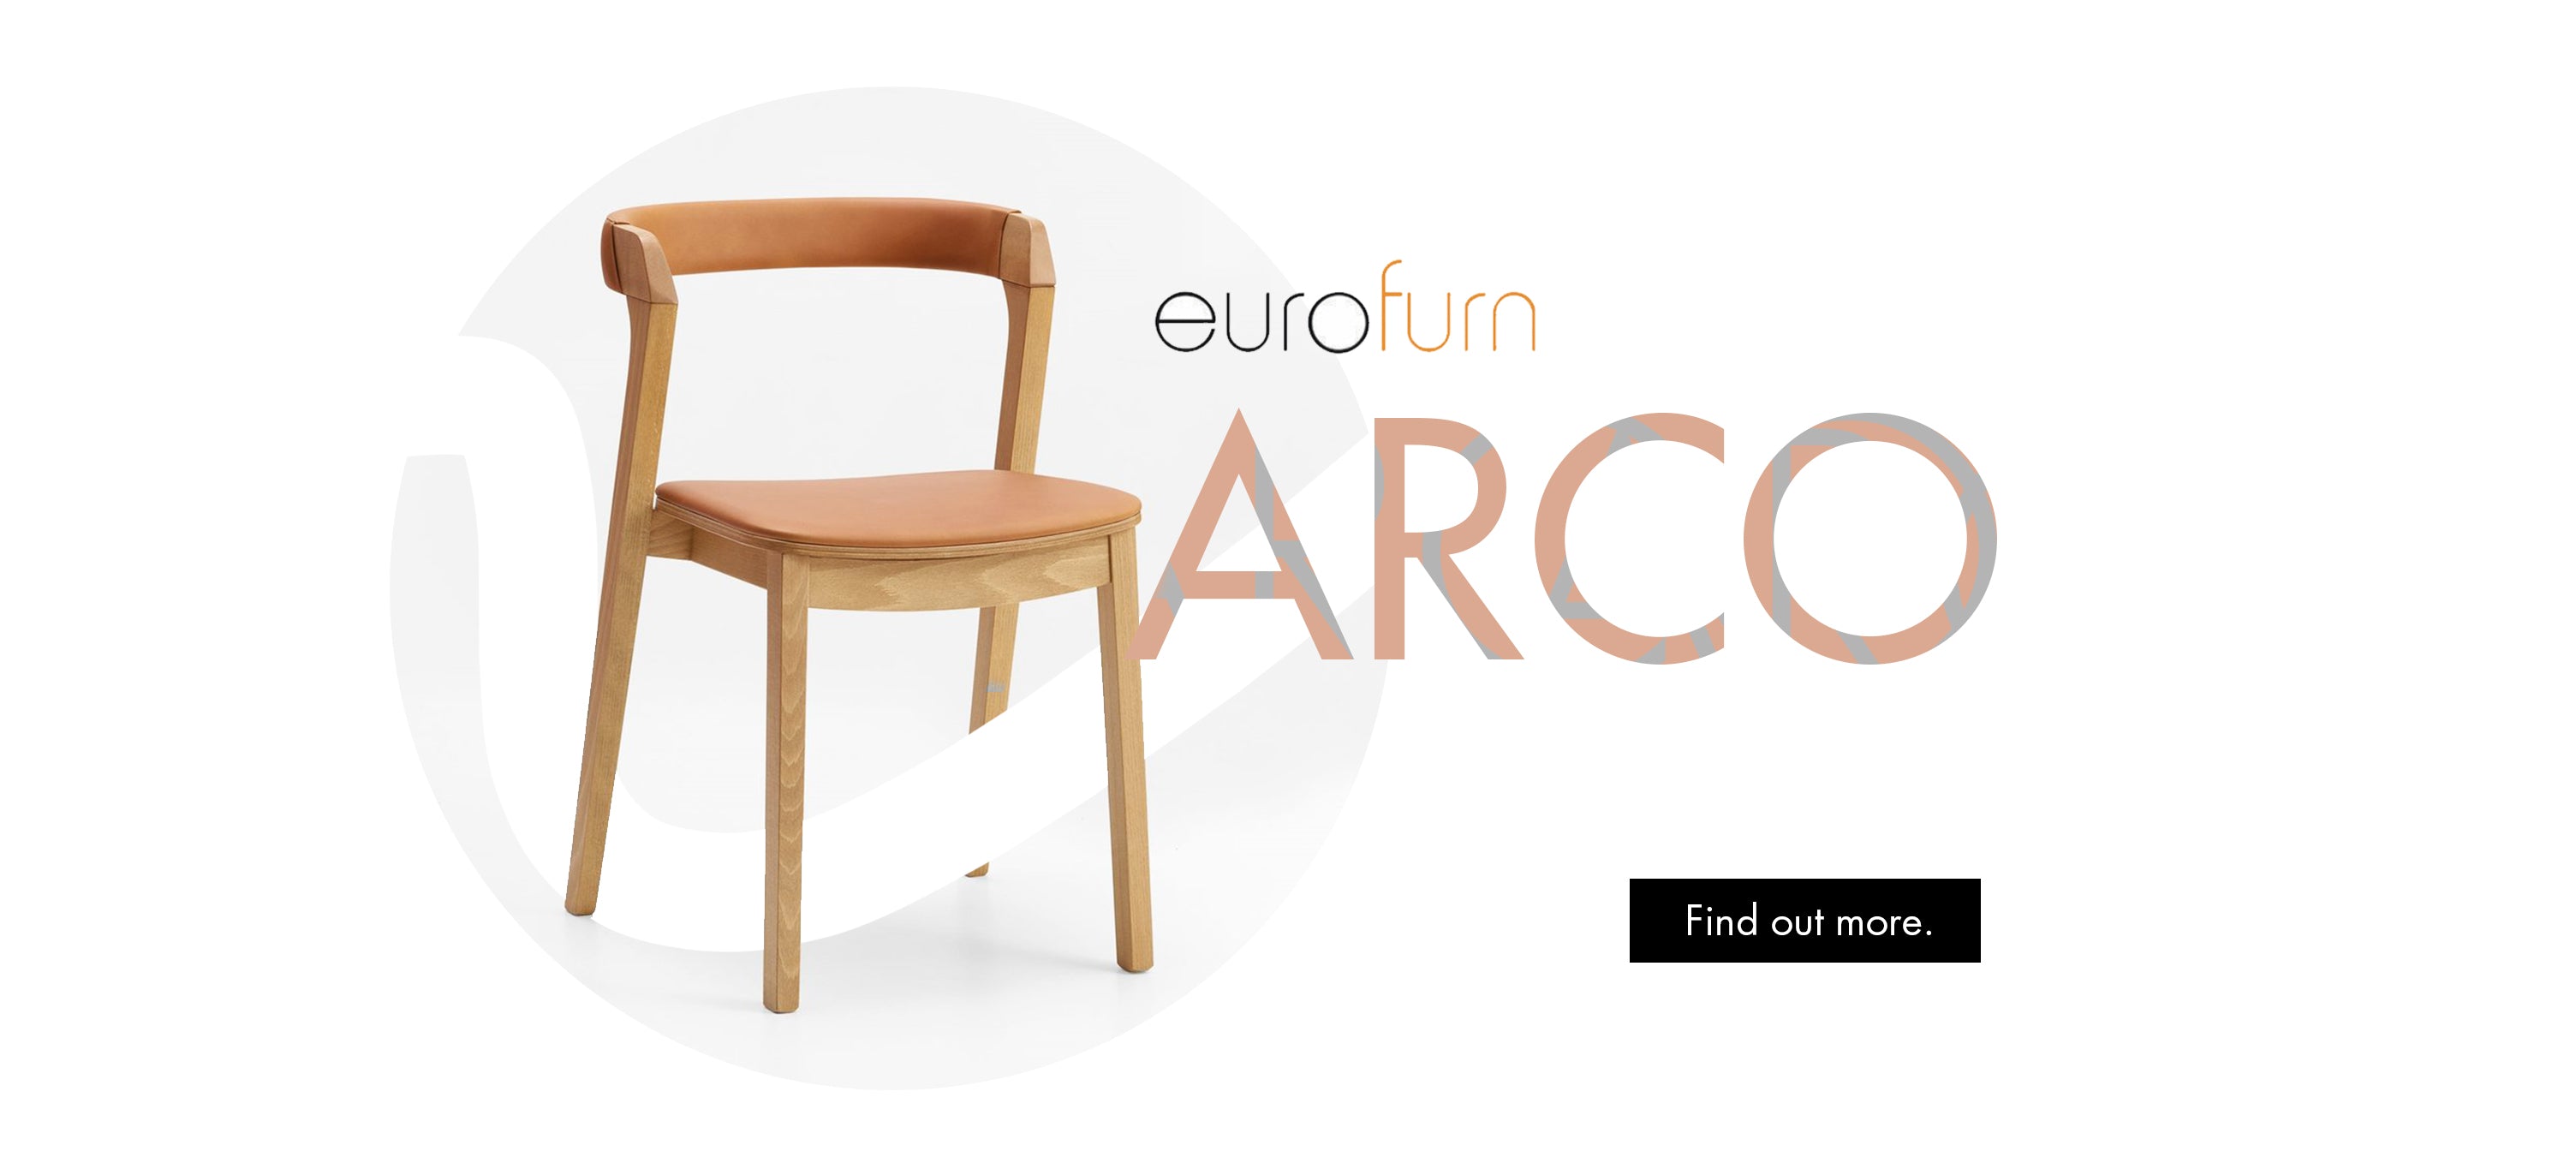 Eurofurn Arco Carousel Image 1 